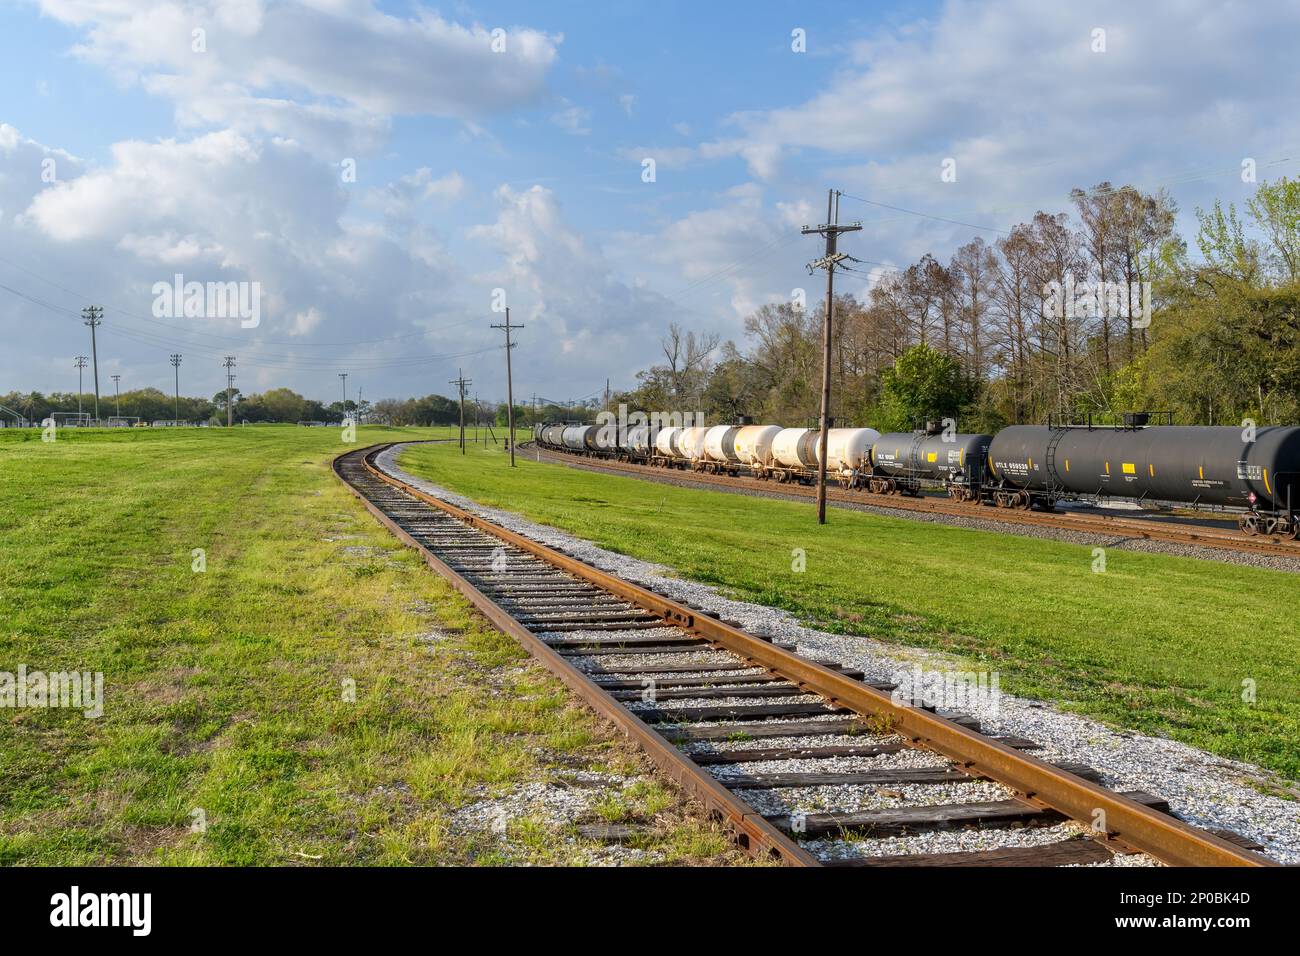 NOUVELLE-ORLÉANS, LA, États-Unis - 1 MARS 2023 : un train avec wagons-citernes transportant des matières dangereuses traverse une zone très peuplée du centre-ville de la Nouvelle-Orléans Banque D'Images